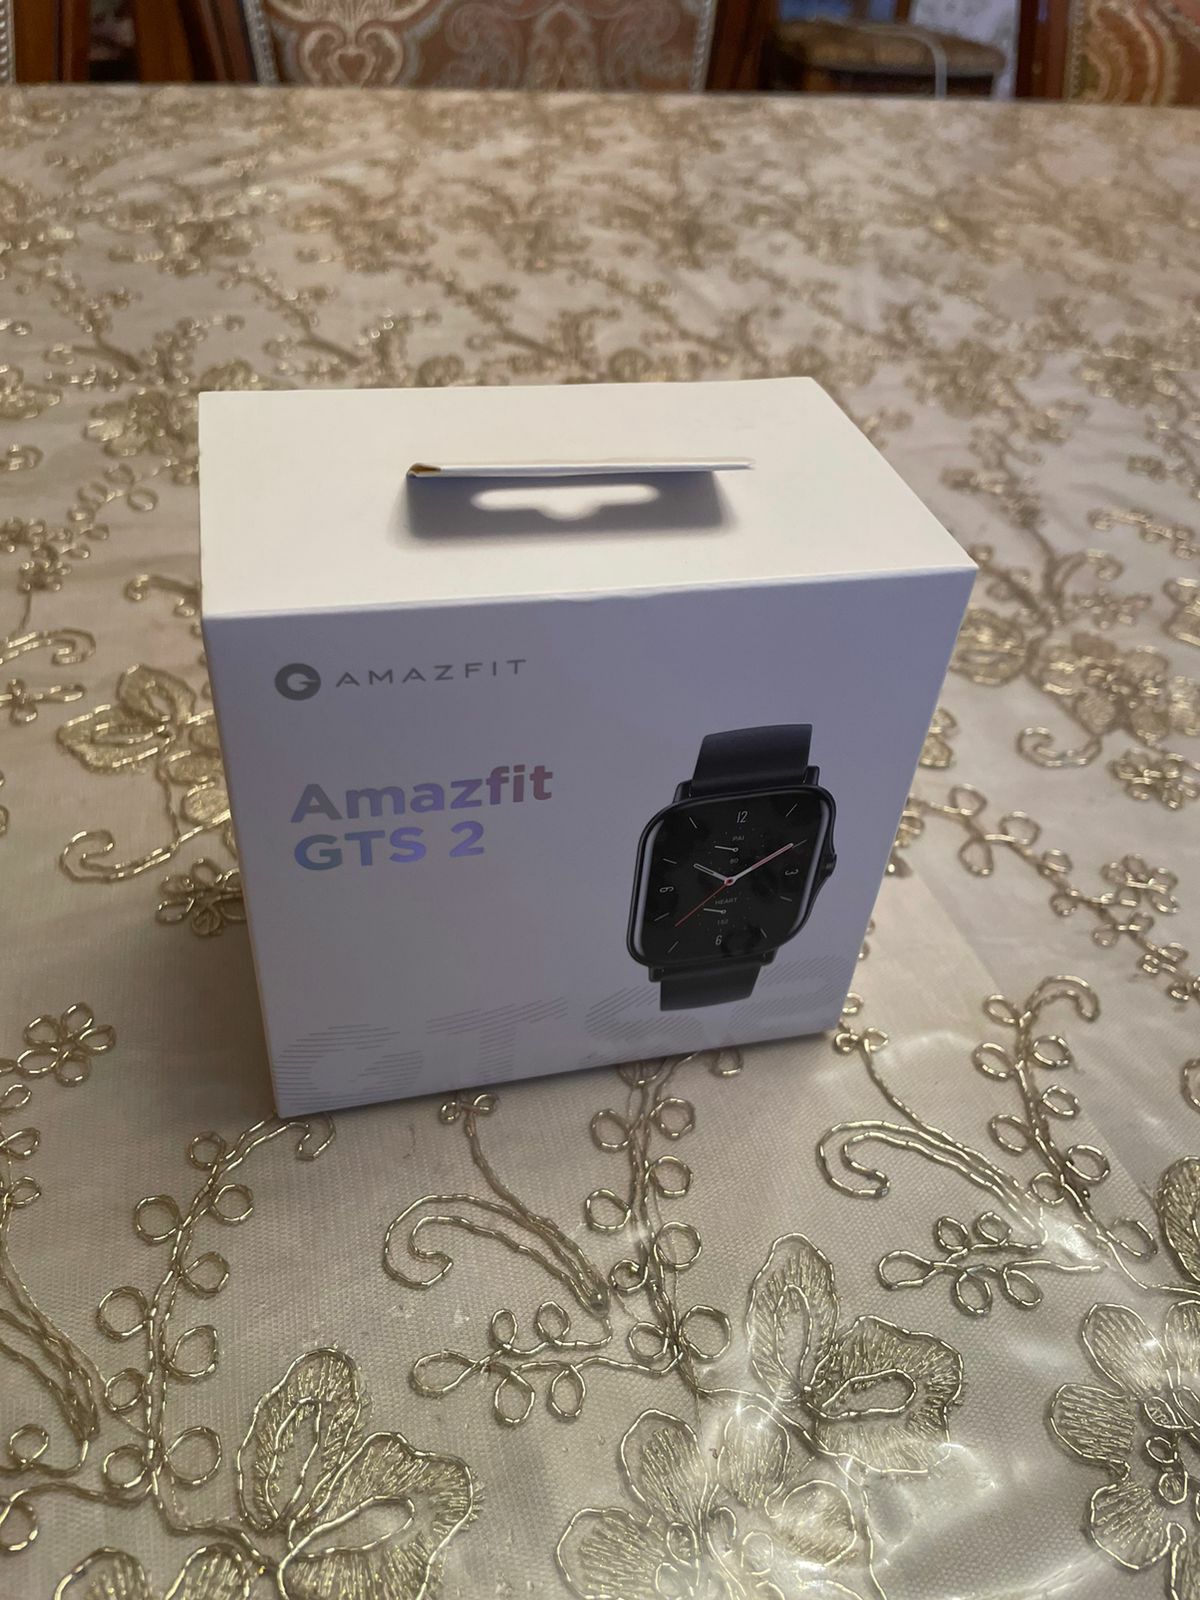 Смарт-часы Amazfit GTS 2